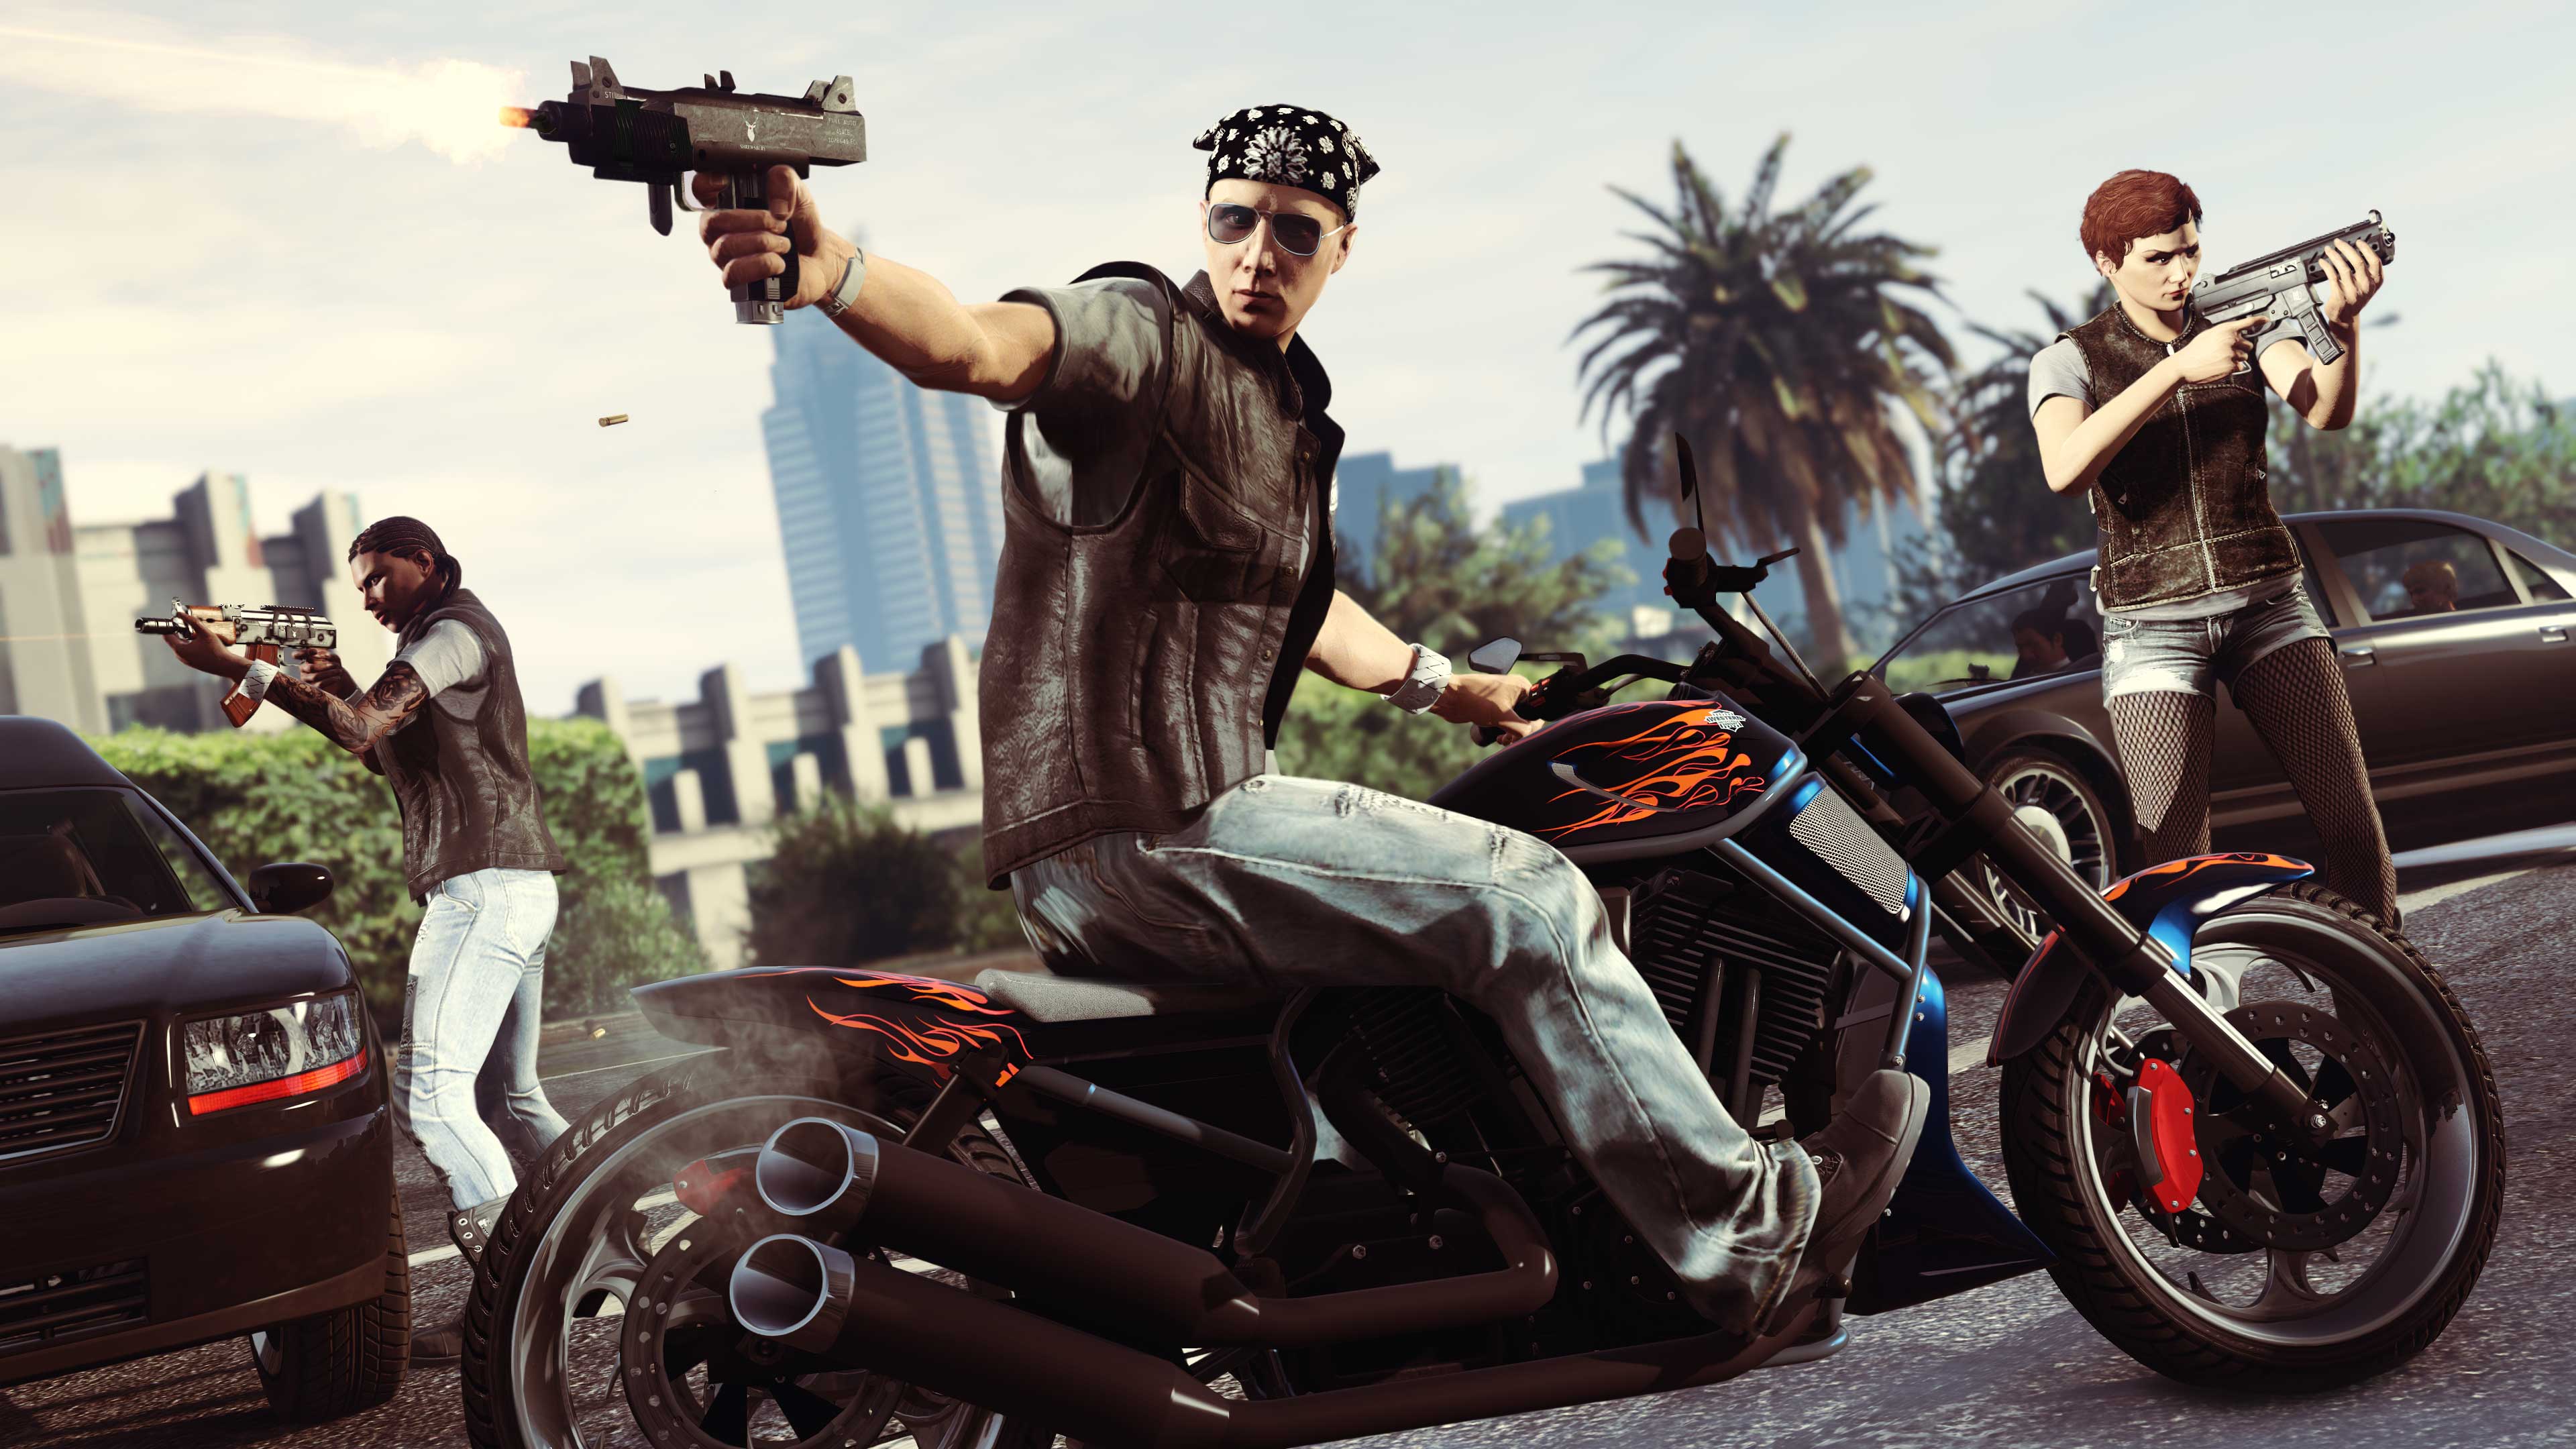 Grand Theft Auto V Review - GameSpot